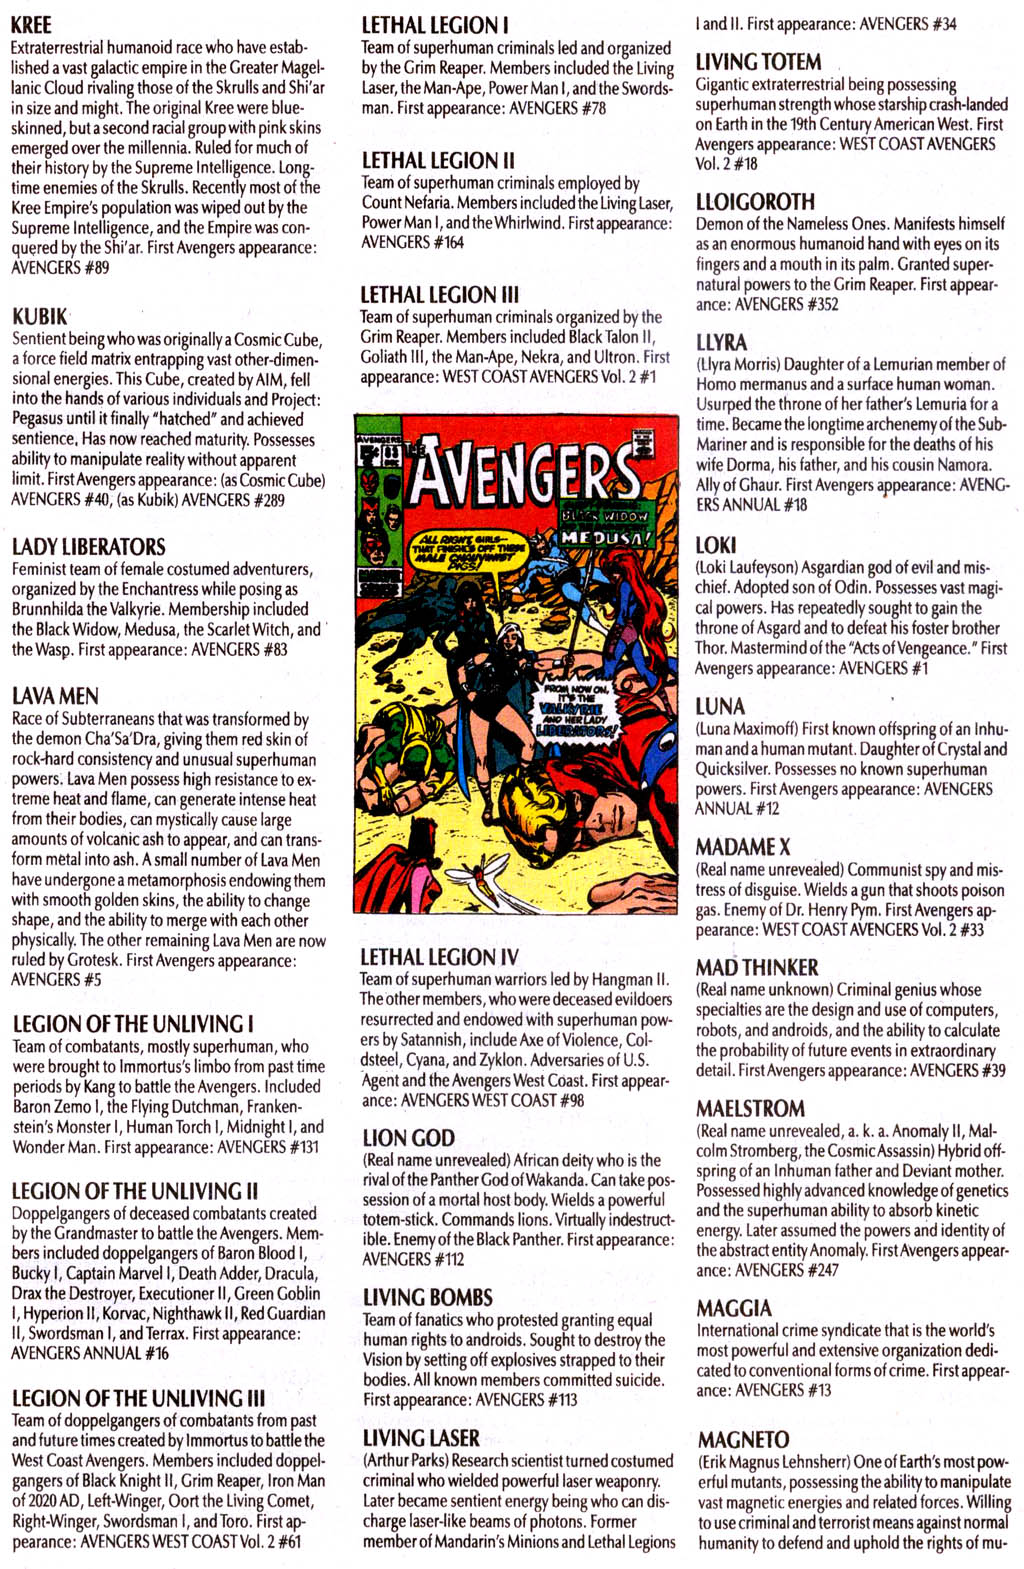 Read online The Avengers Log comic -  Issue # Full - 39